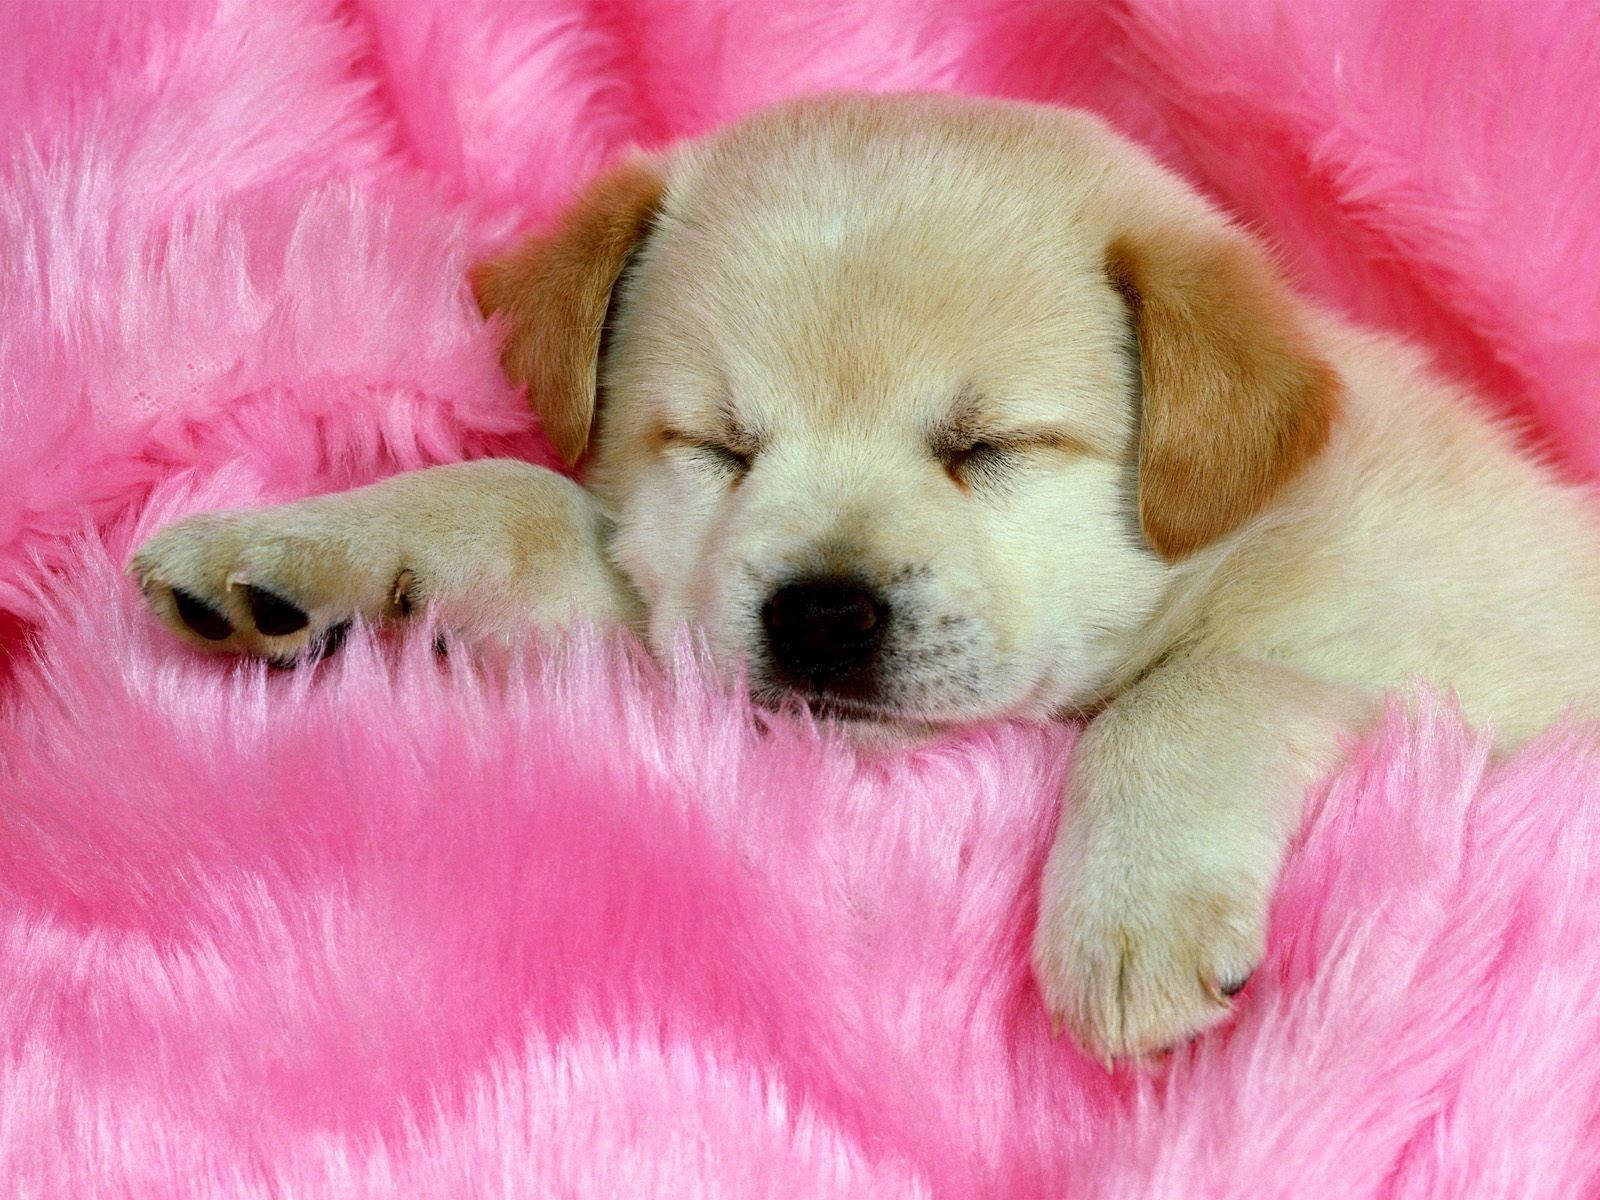 Sleeping Golden Retriever Dog On Pink Fur Wallpaper